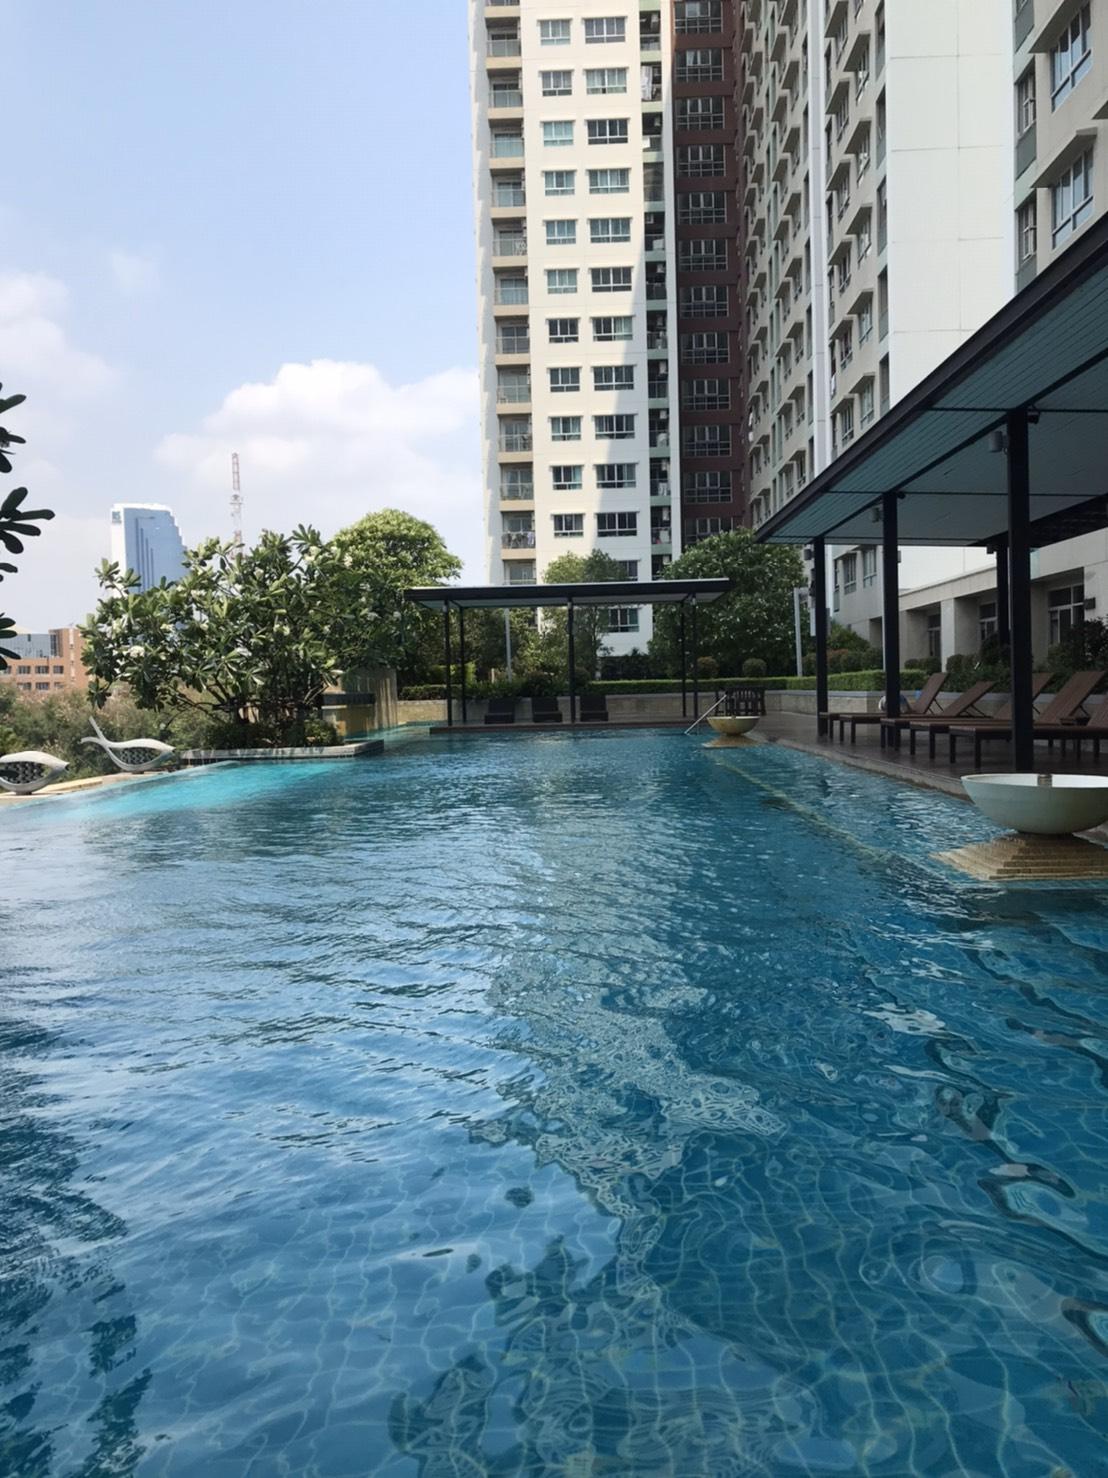 เช่าคอนโด ลุมพินี เพลส พระราม9-รัชดา คอนโดมิเนียม - Condo Rental Lumpini Place Rama IX-Ratchada condominium - 556317